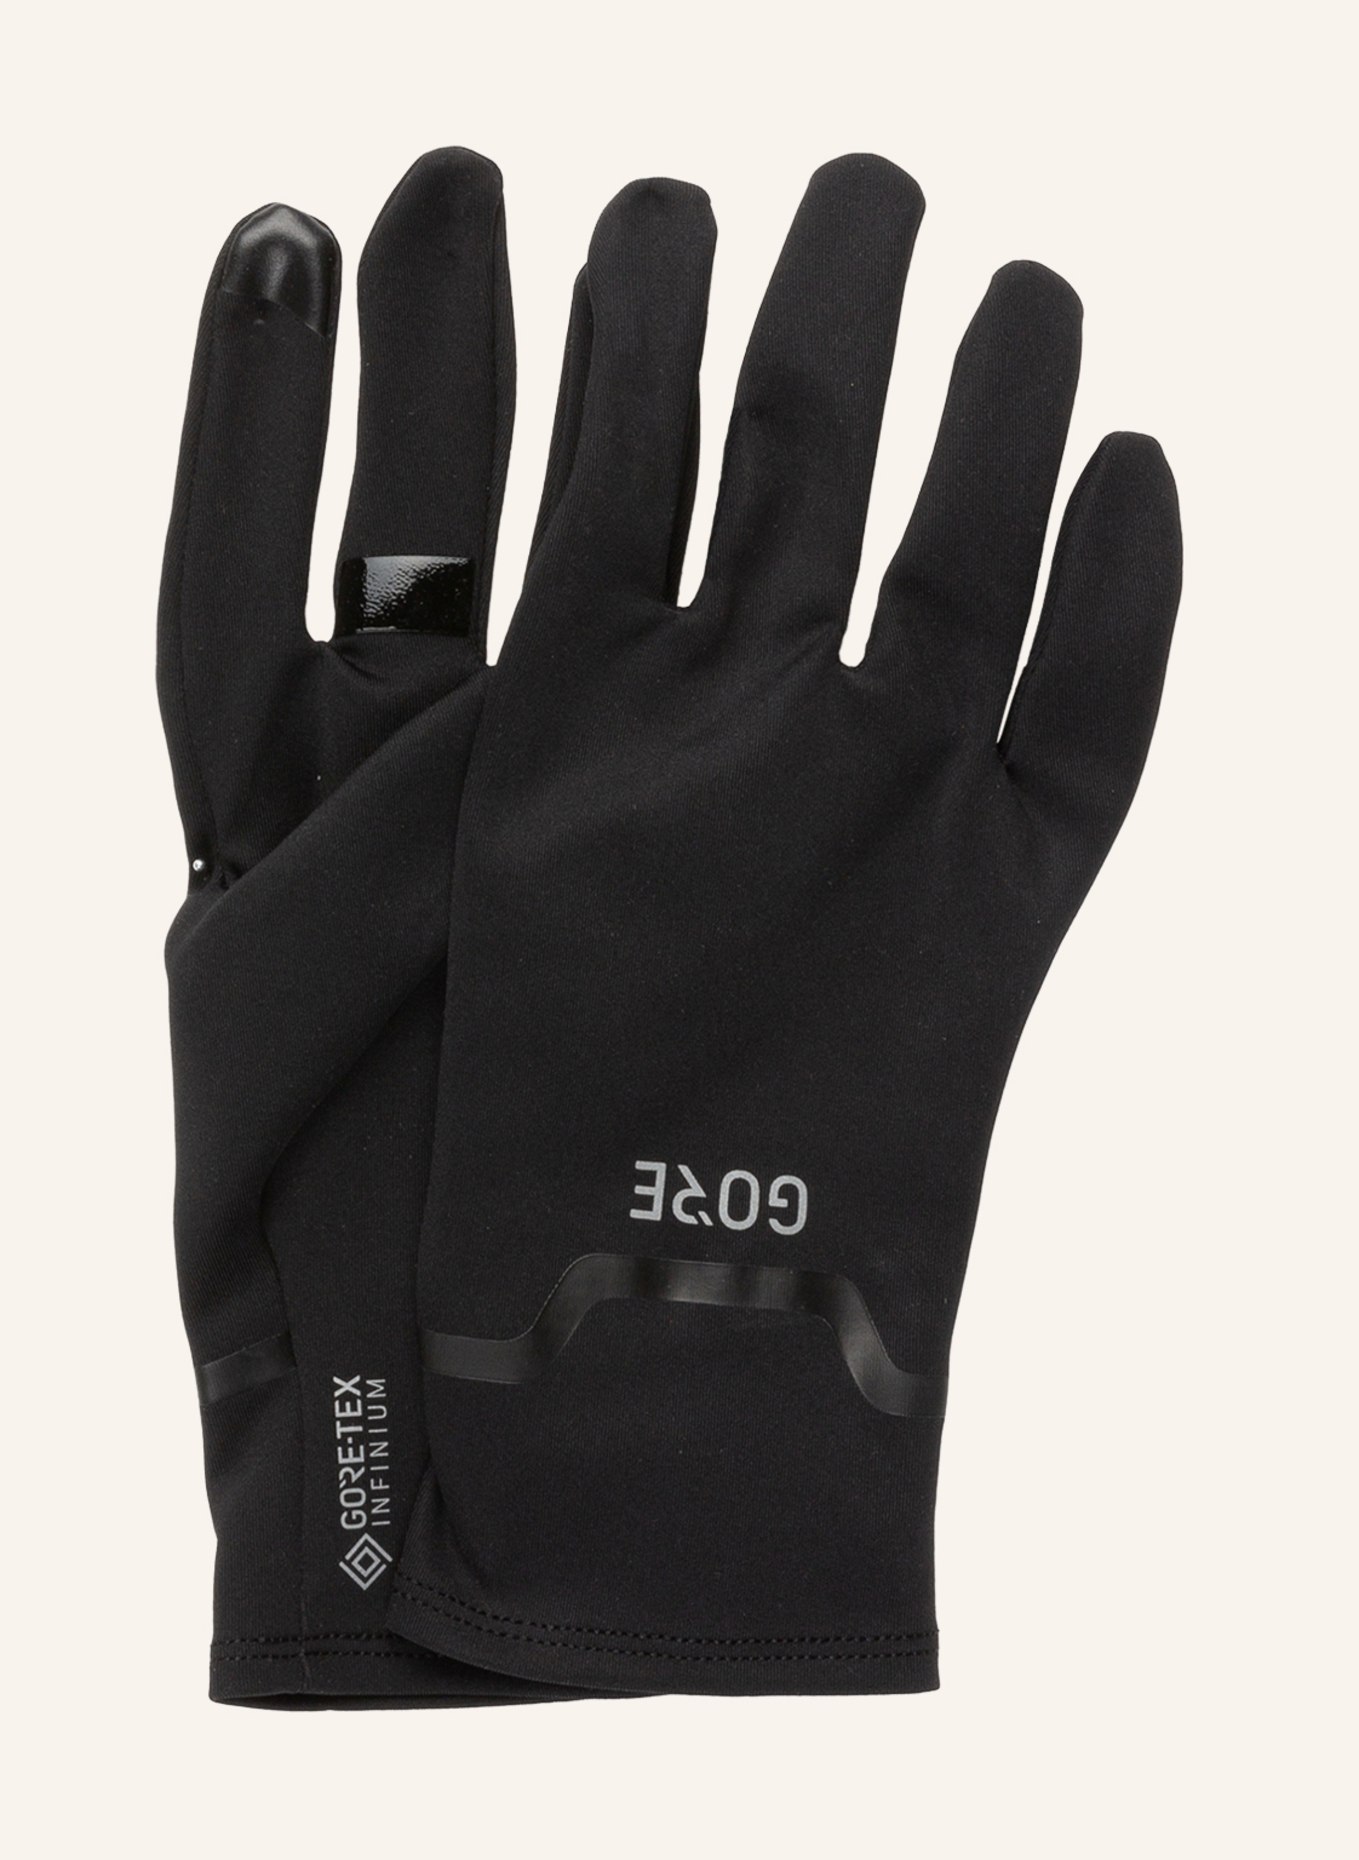 GORE RUNNING WEAR Multisport-Handschuhe INFINIUM™ in GORE-TEX schwarz